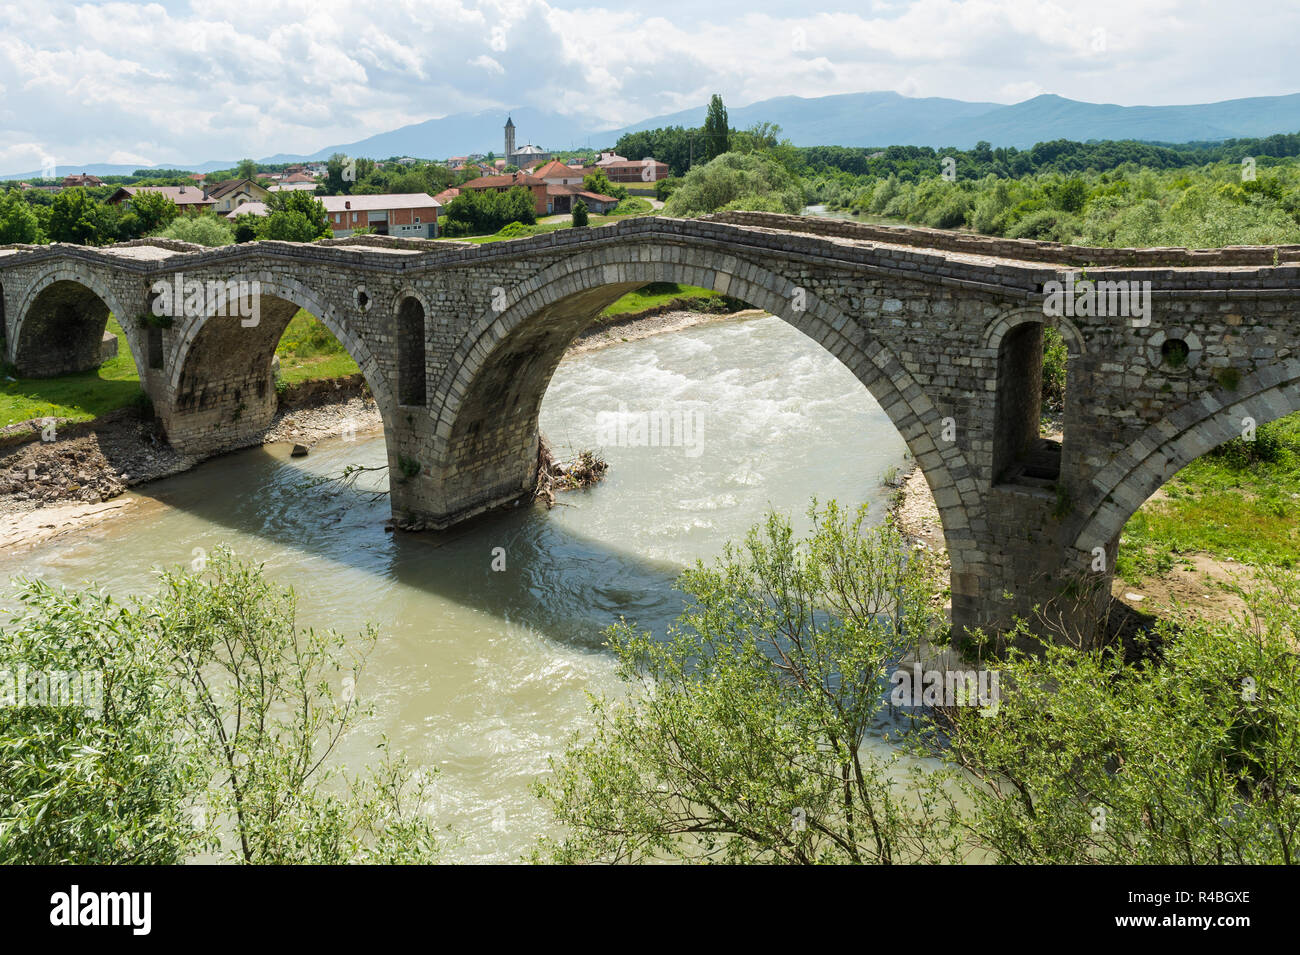 Ottoman style Terzijski Bridge or Tailor’s Bridge, Gjakova, Kosovo Stock Photo